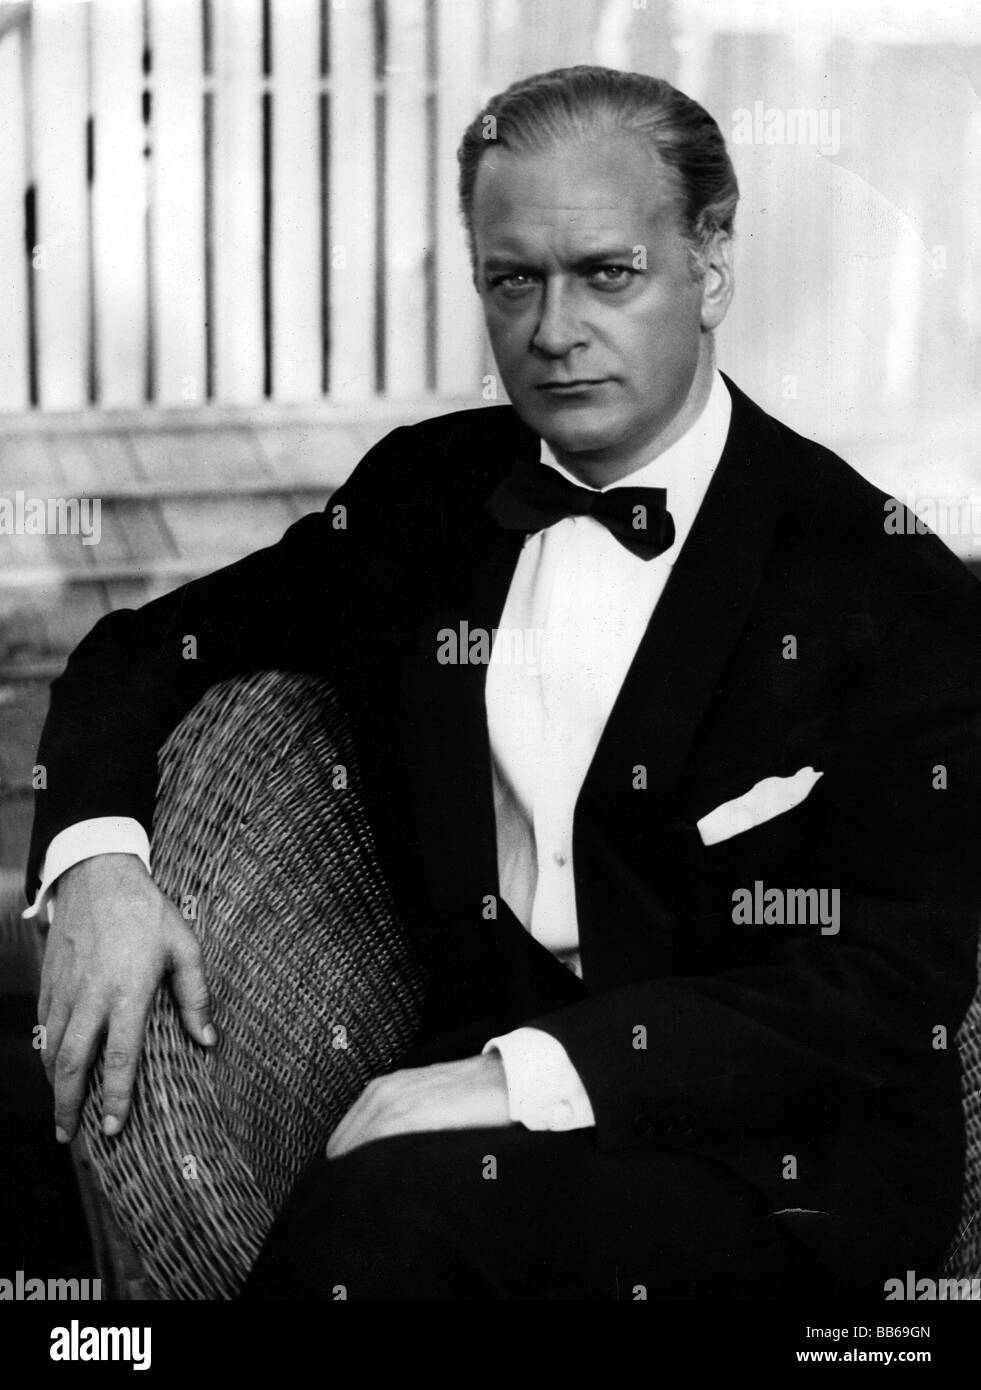 Actor suit tie Banque d'images noir et blanc - Alamy